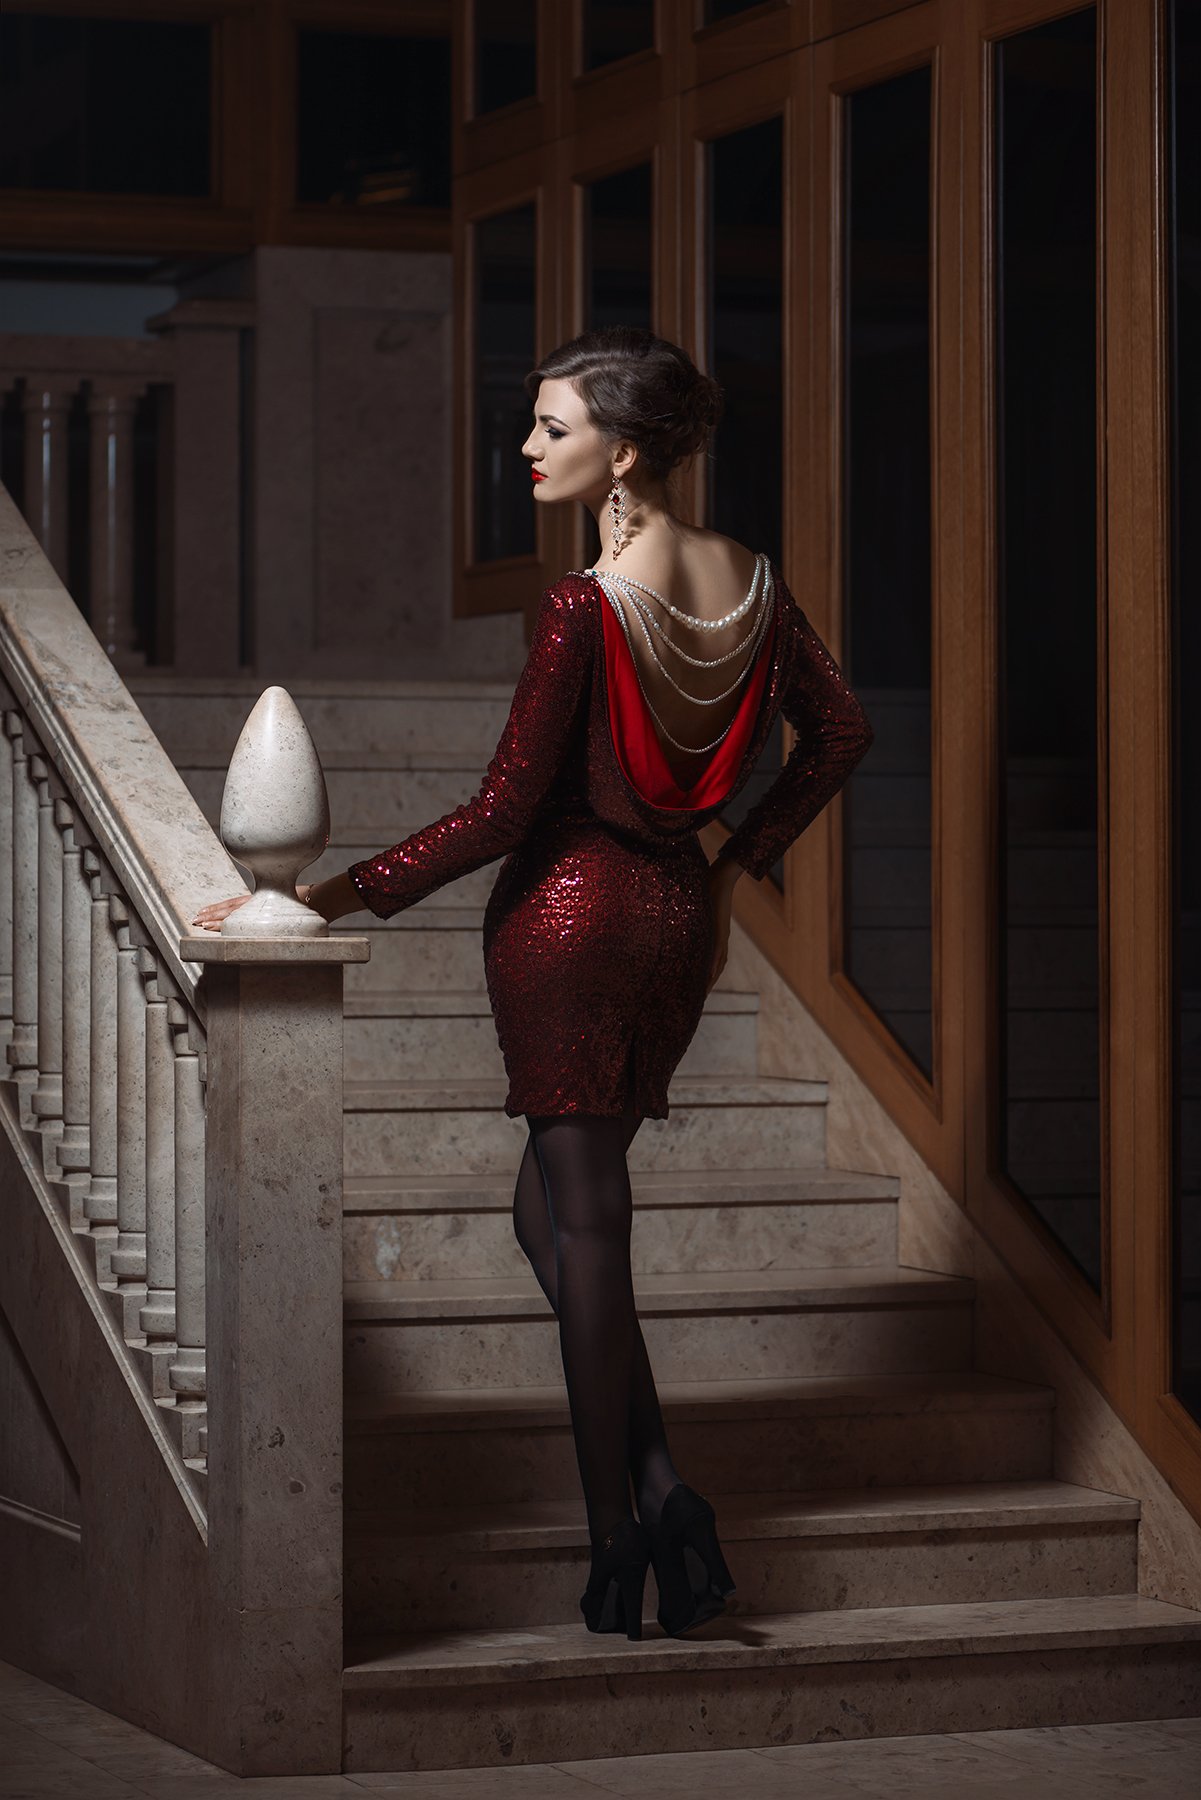 девушка, лестница, платье, Nikon, D800, 2017, Илья Новицкий